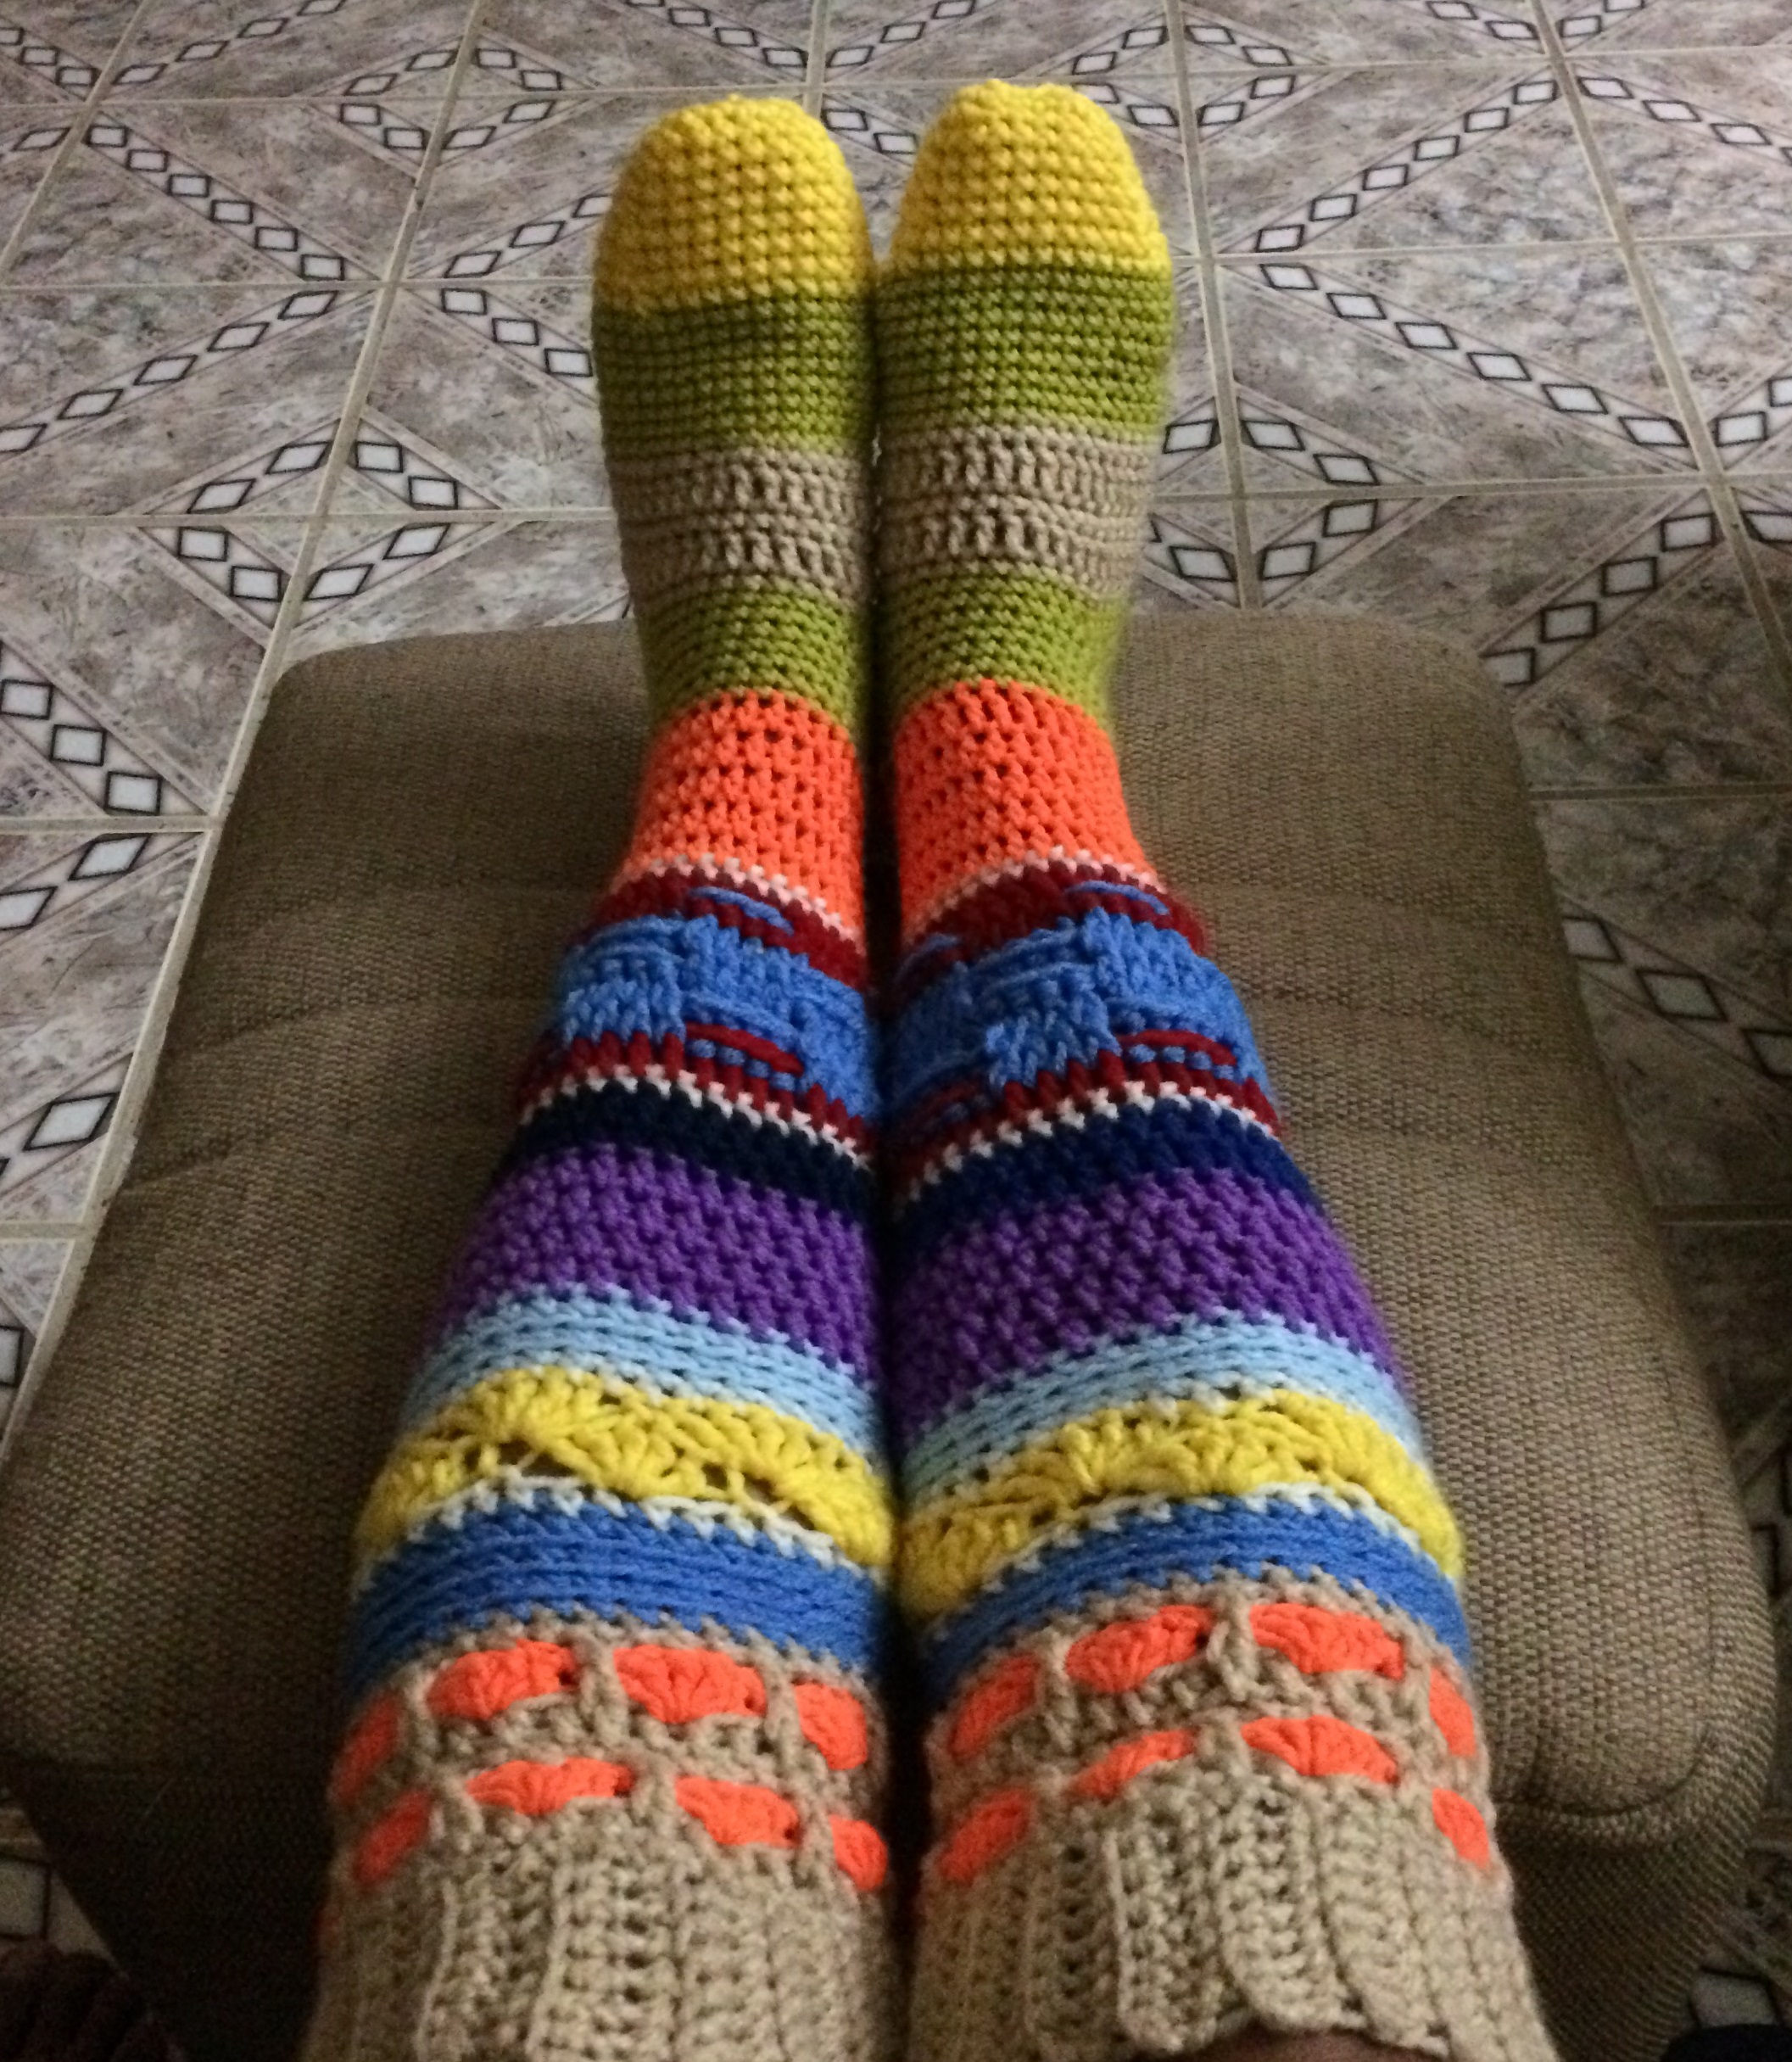 Wool scrappy socks Knit funny socks women Rainbow long socks